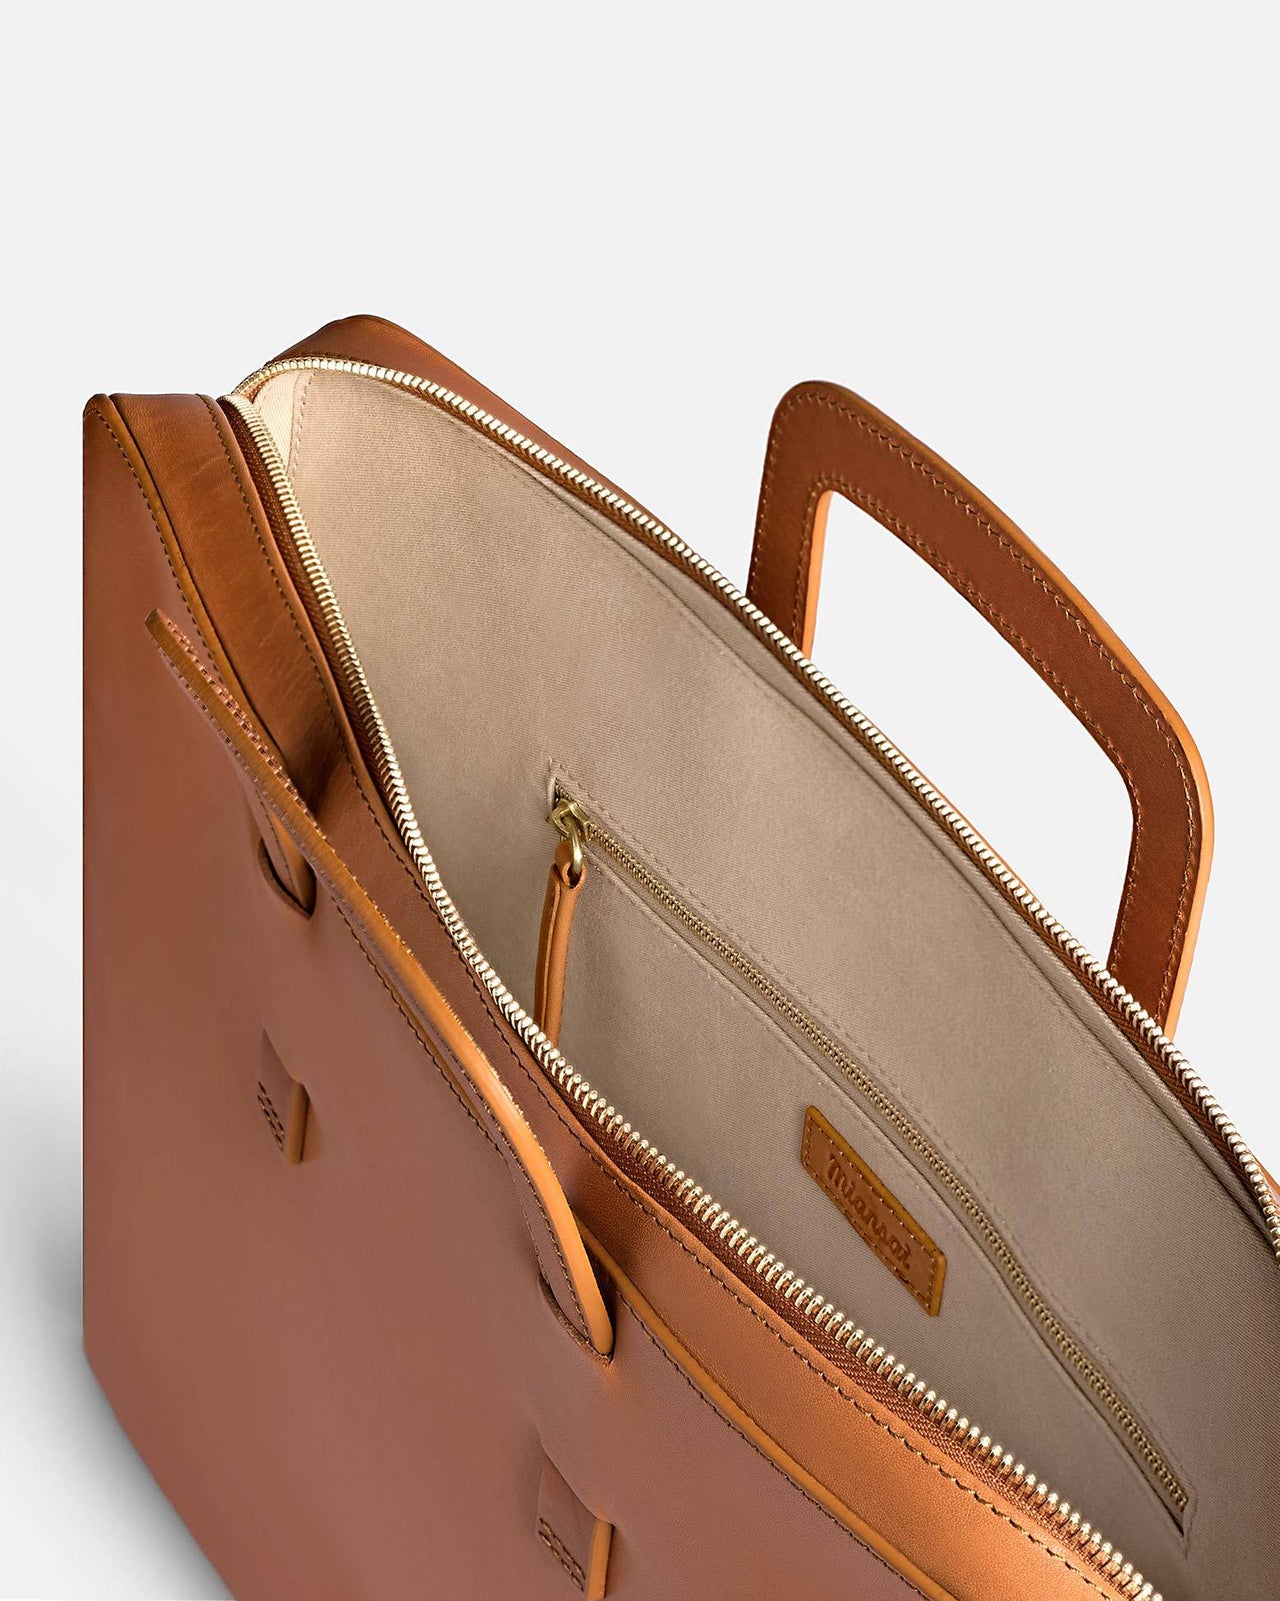 Utility Business Bag L$VV Luxury Designer Men Shoulder Bag - China Handbags  and Shoulder Bag price